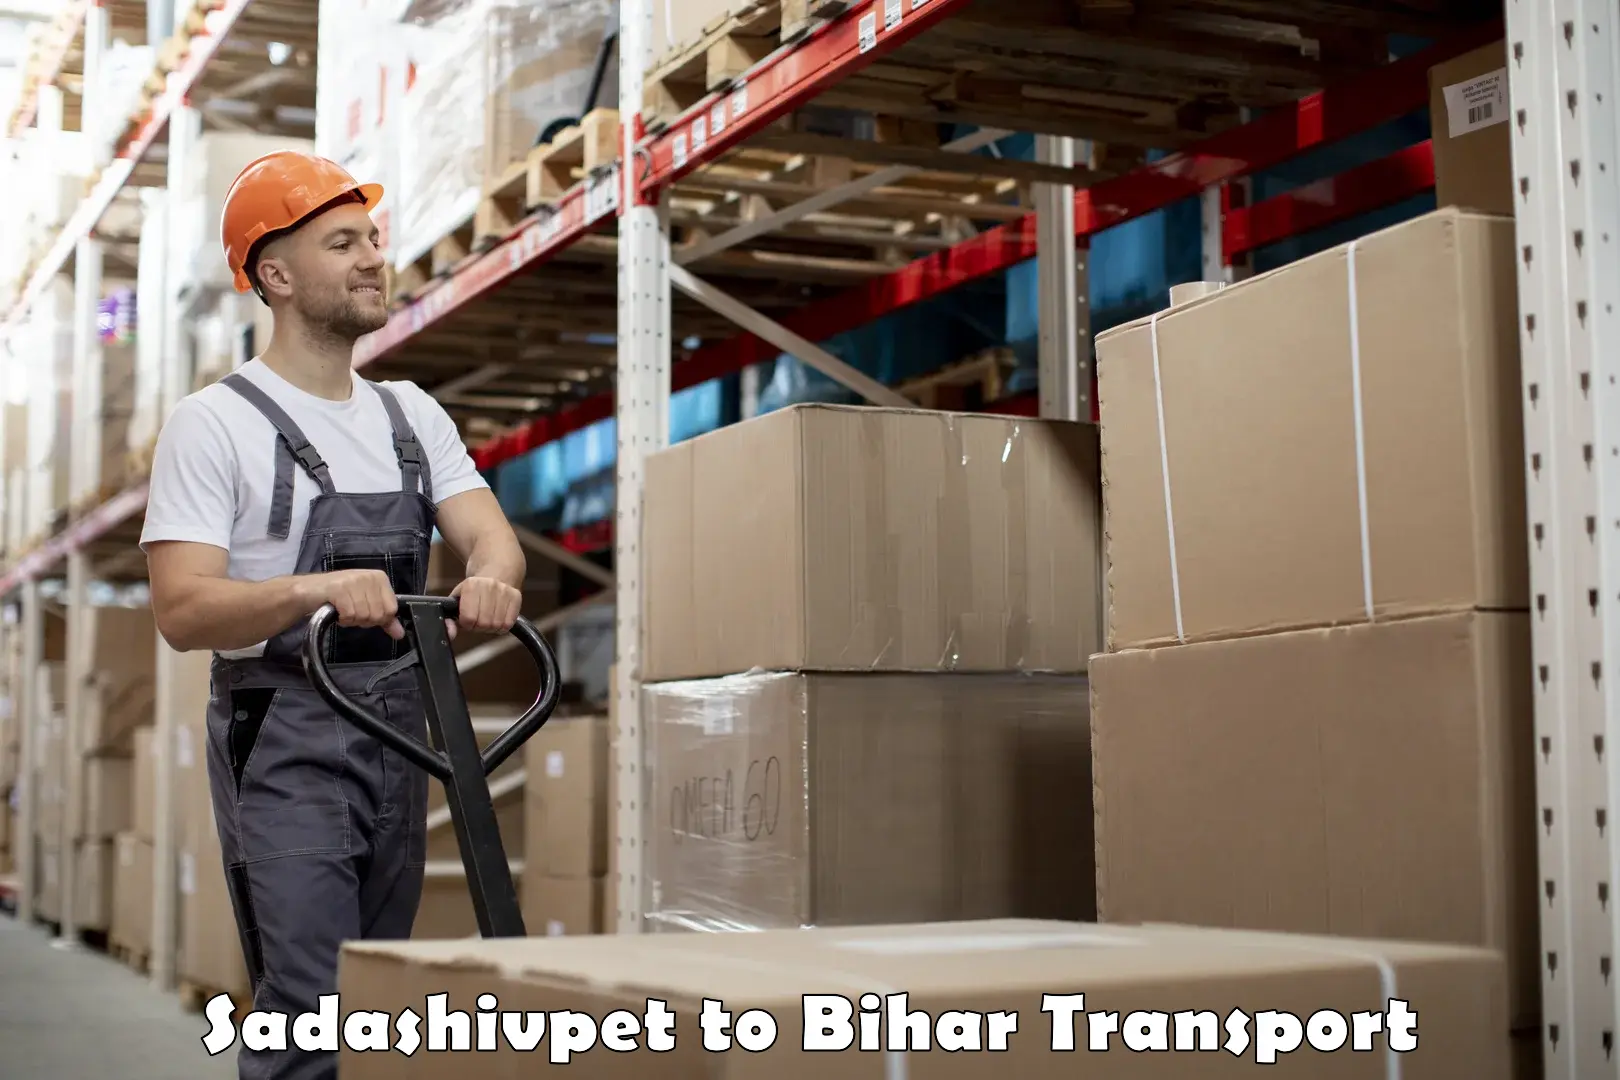 Daily parcel service transport Sadashivpet to Bihar